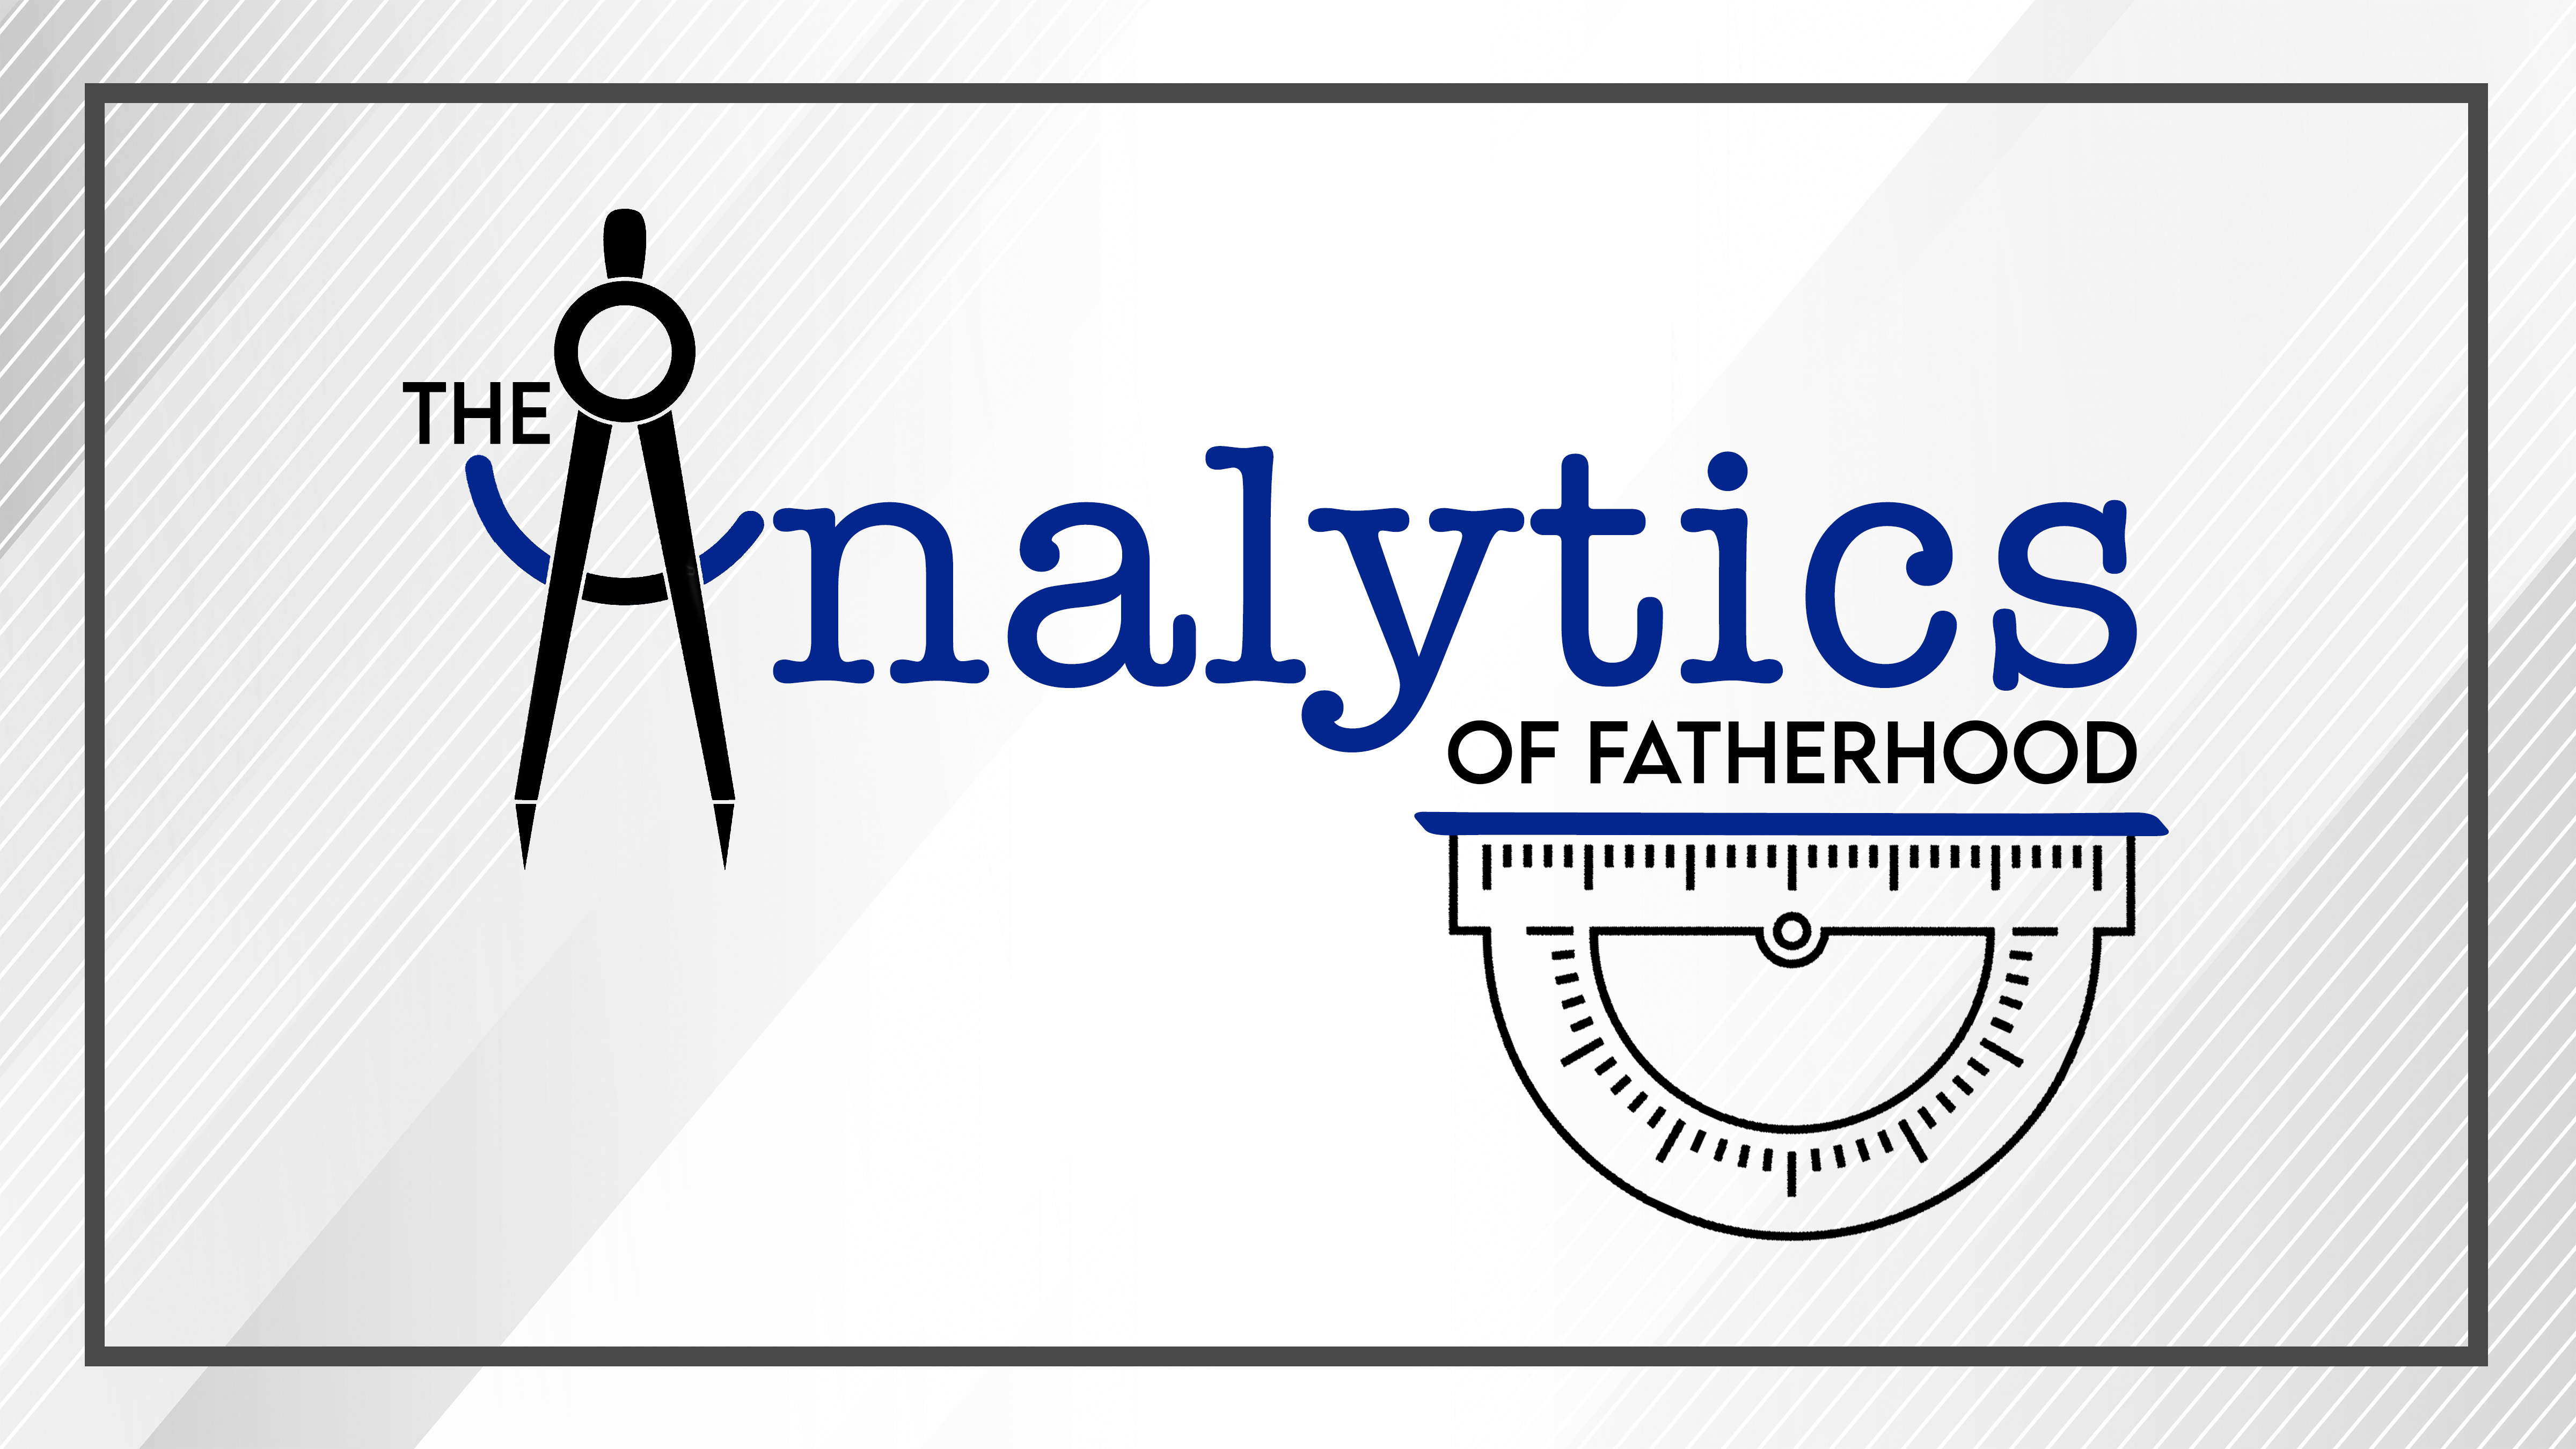 The Analytics of Fatherhood